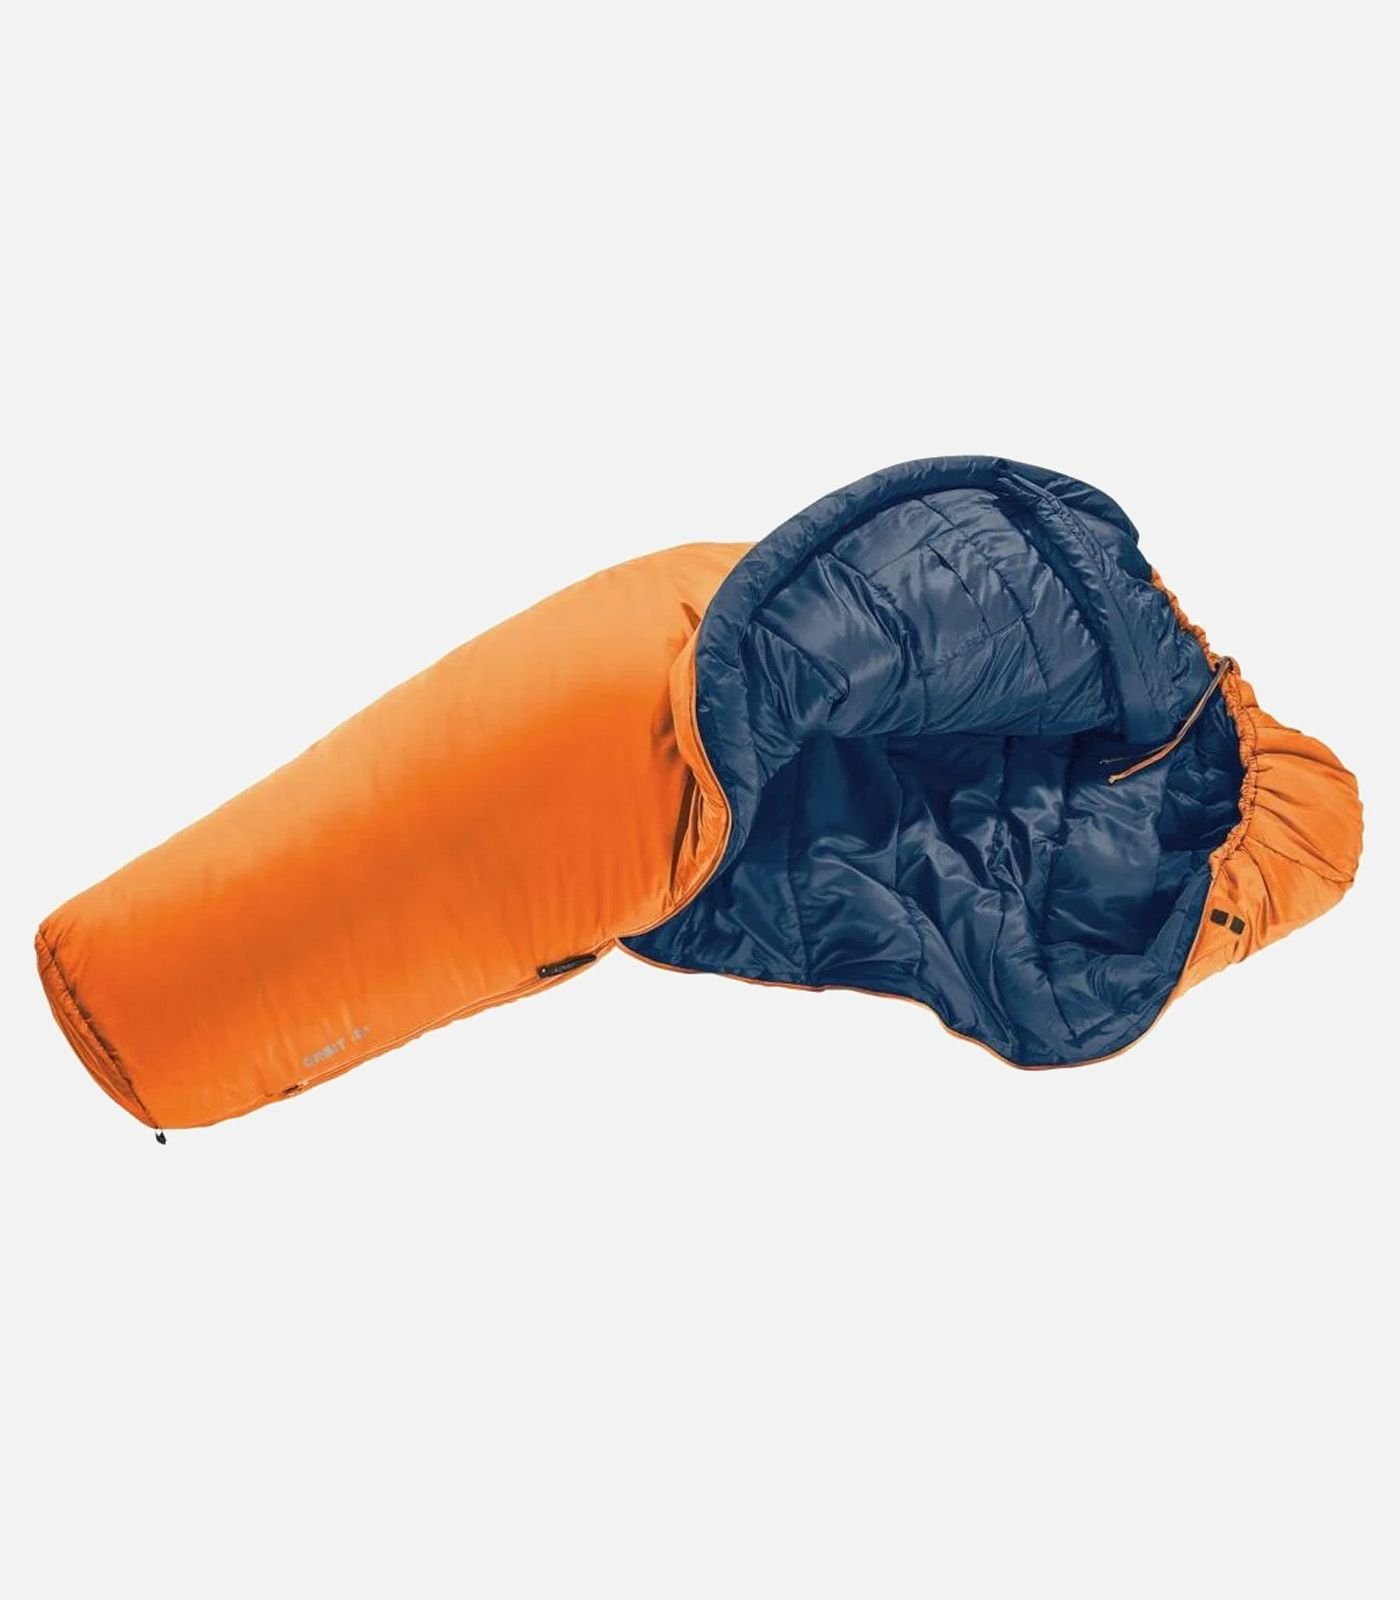 DEUTER Orbit -5° sleeping bag right hand zip